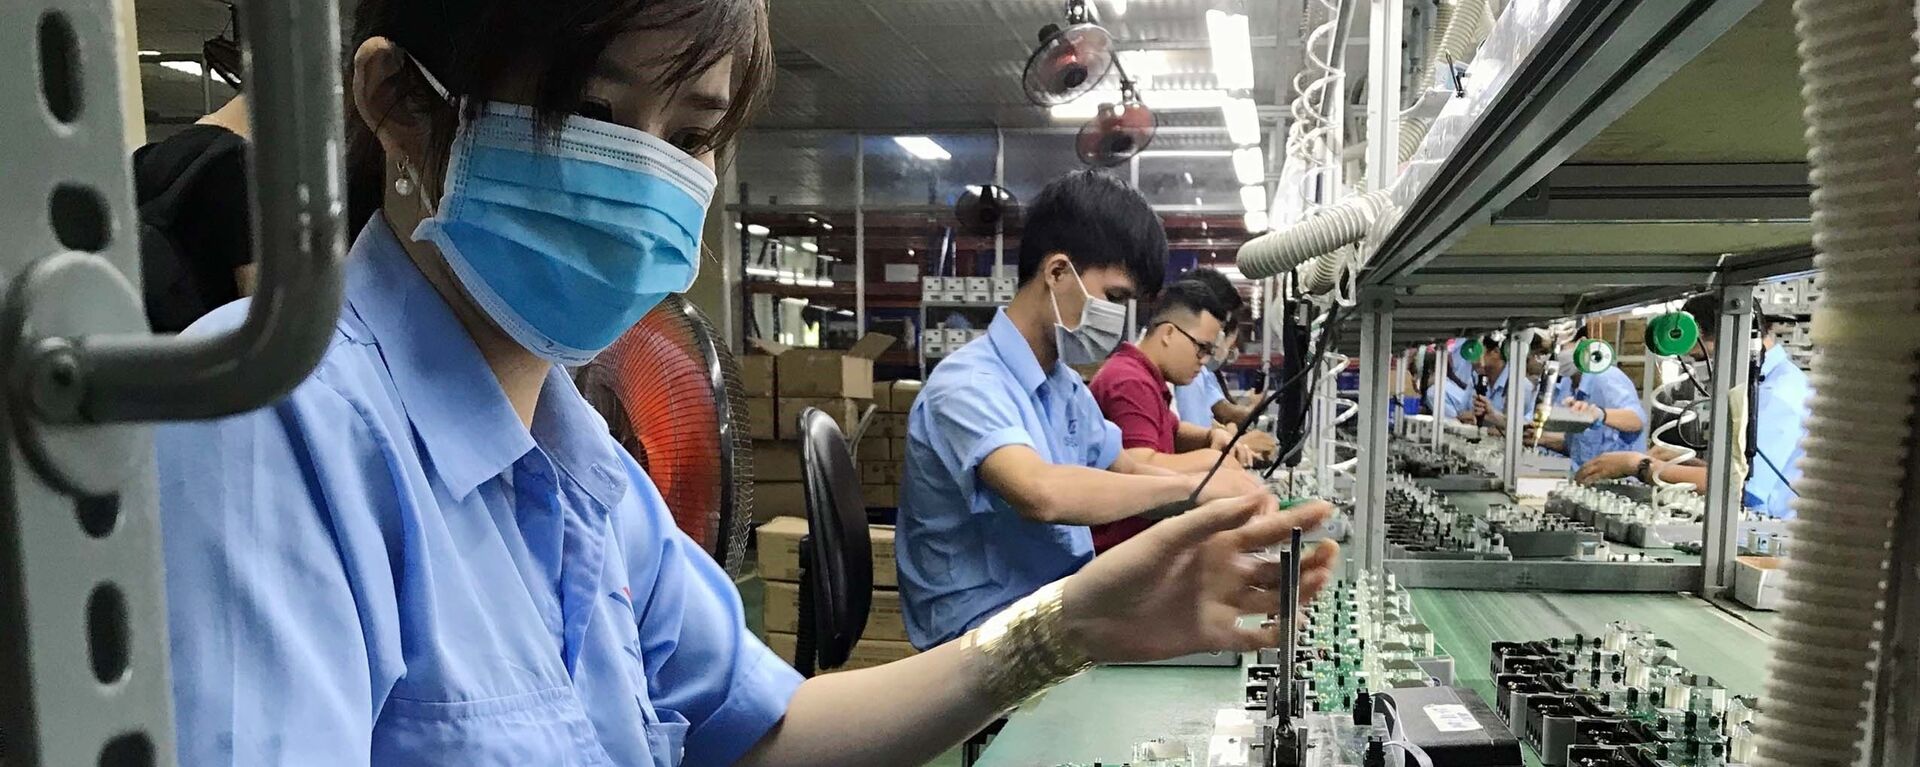 Dây chuyền sản xuất các thiết bị điện, điện tử tại Công ty cổ phần Thiết bị điện VI-NA-SI-No (VSEE JSC) tại khu công nghiệp Long Hậu (Long An).  - Sputnik Việt Nam, 1920, 17.06.2019